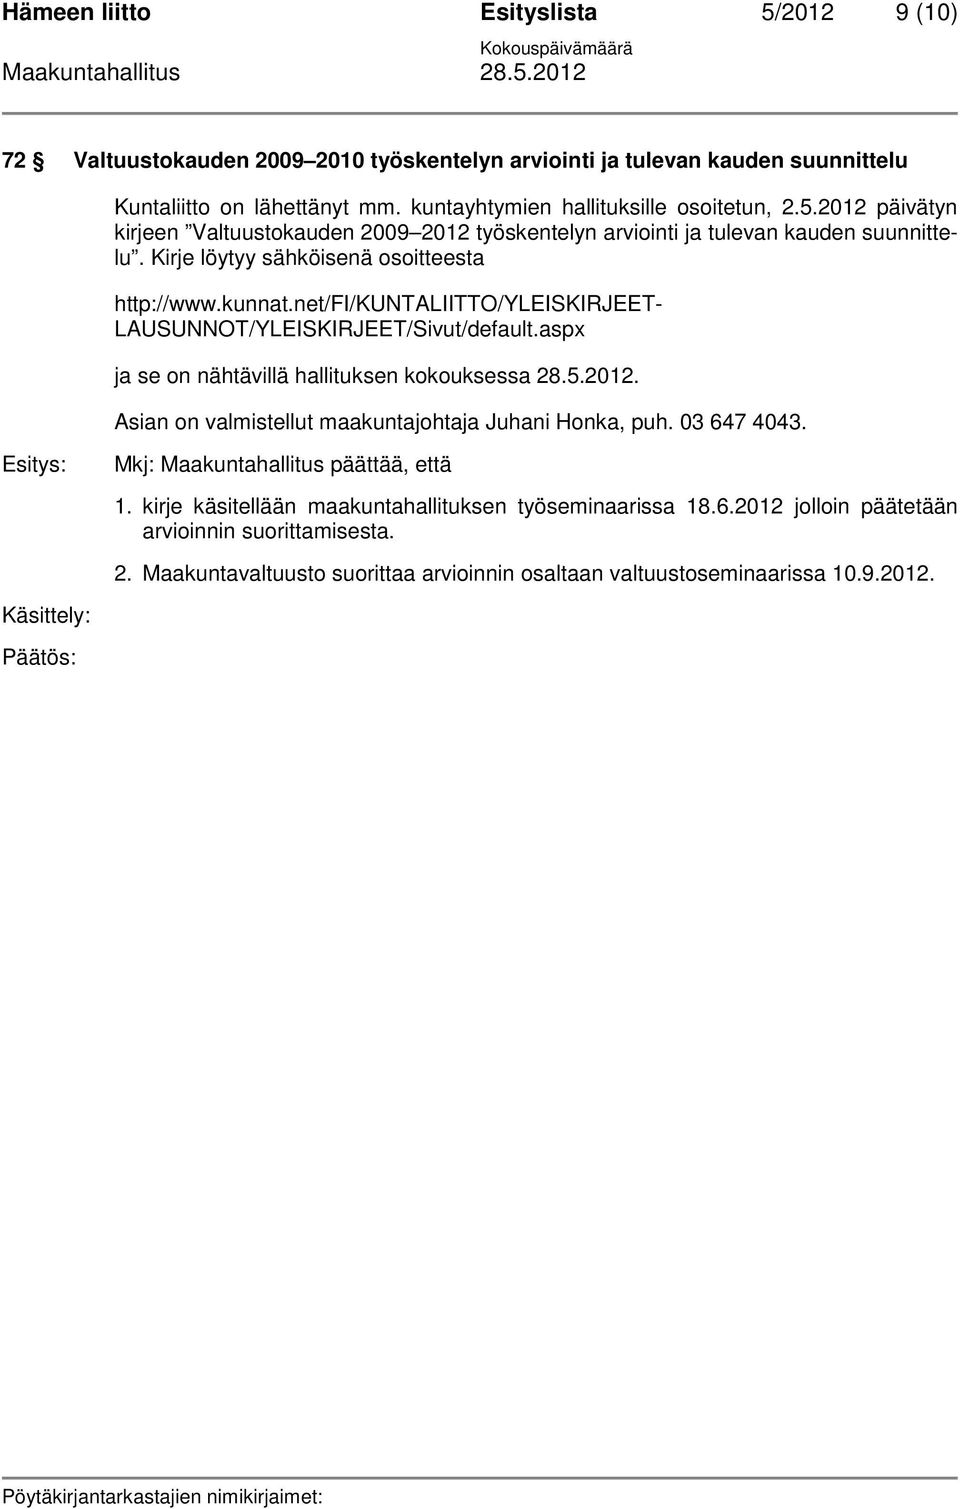 Asian on valmistellut maakuntajohtaja Juhani Honka, puh. 03 647 4043. Mkj: Maakuntahallitus päättää, että 1. kirje käsitellään maakuntahallituksen työseminaarissa 18.6.2012 jolloin päätetään arvioinnin suorittamisesta.